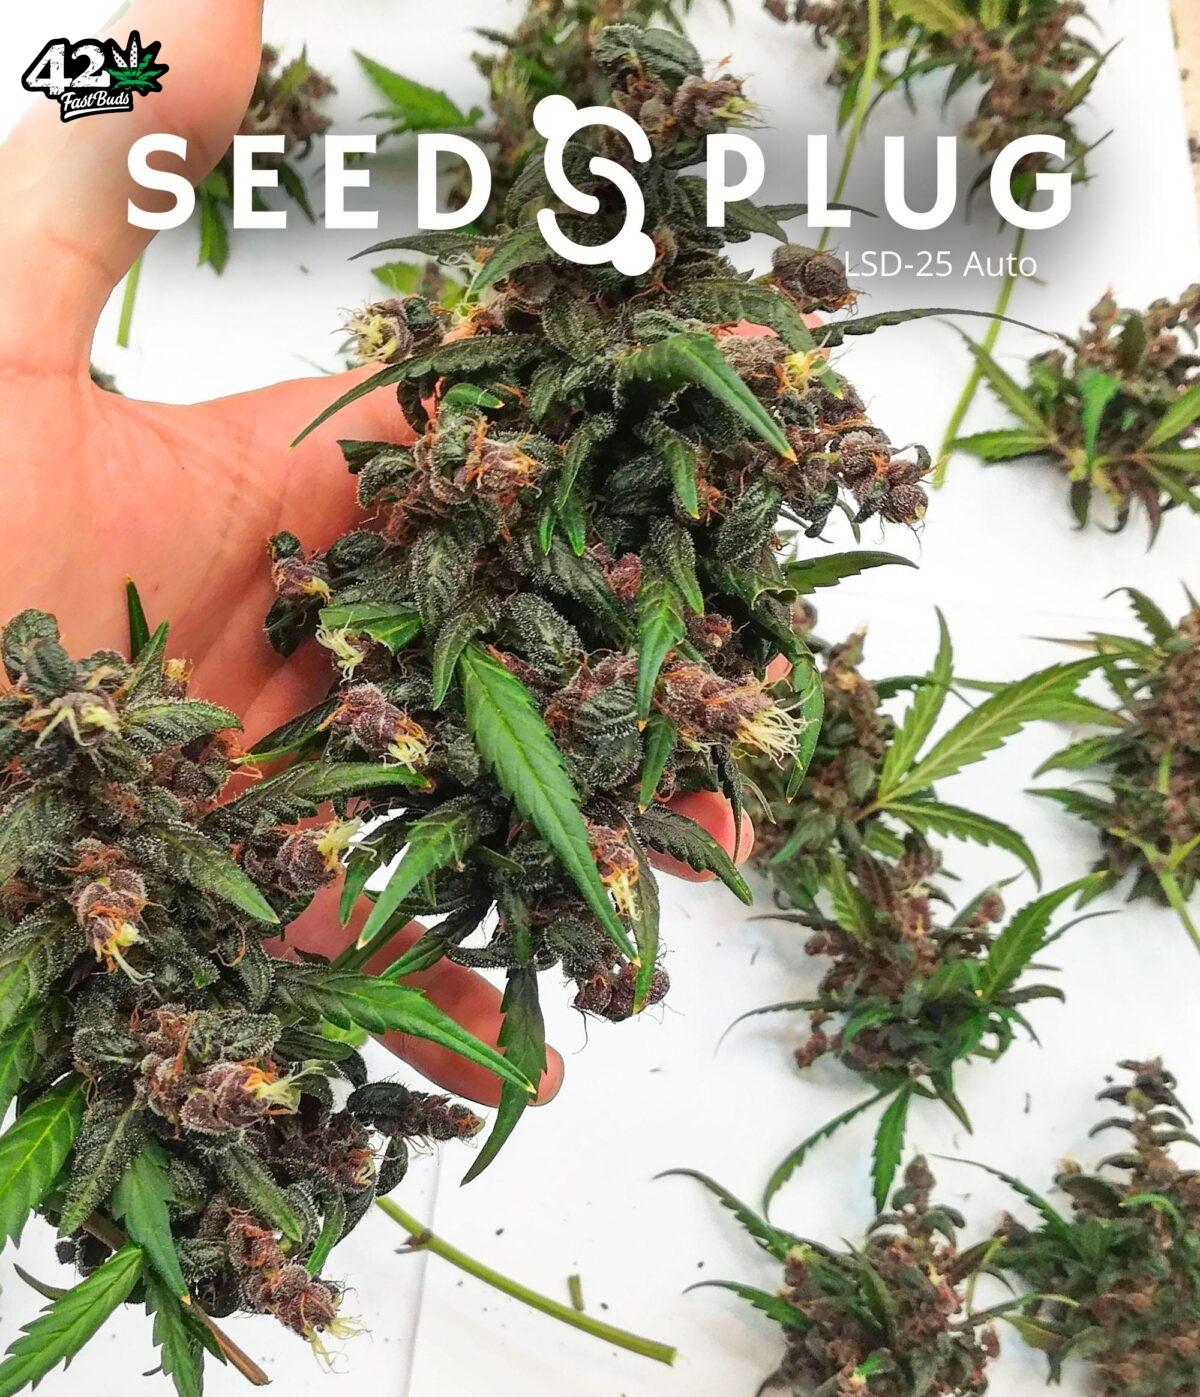 LSD-25 Auto | SeedsPlug